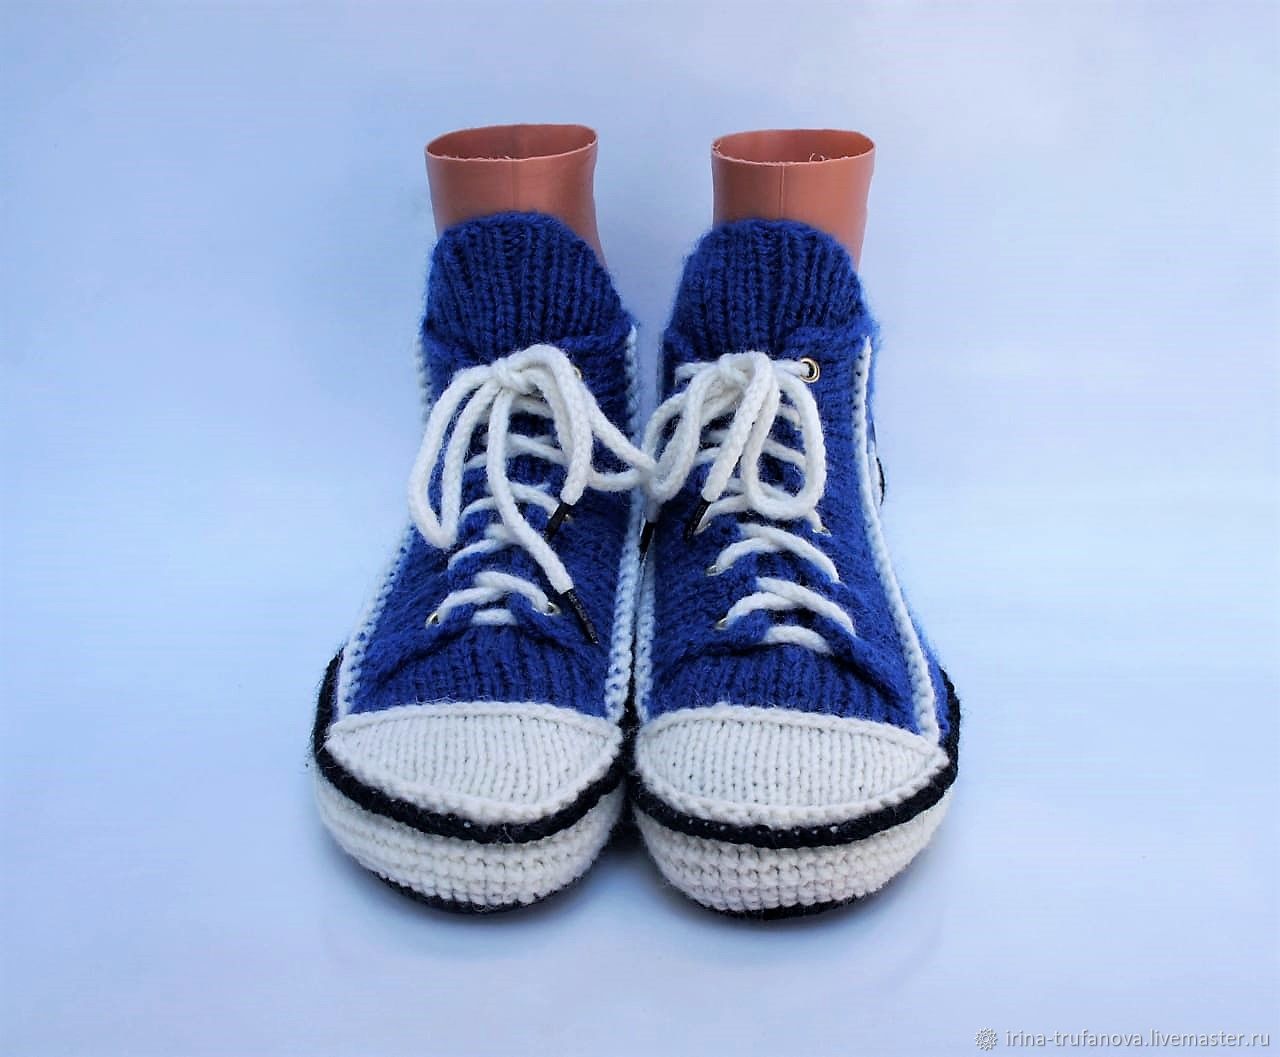 Вязаные носки в виде кроссовок